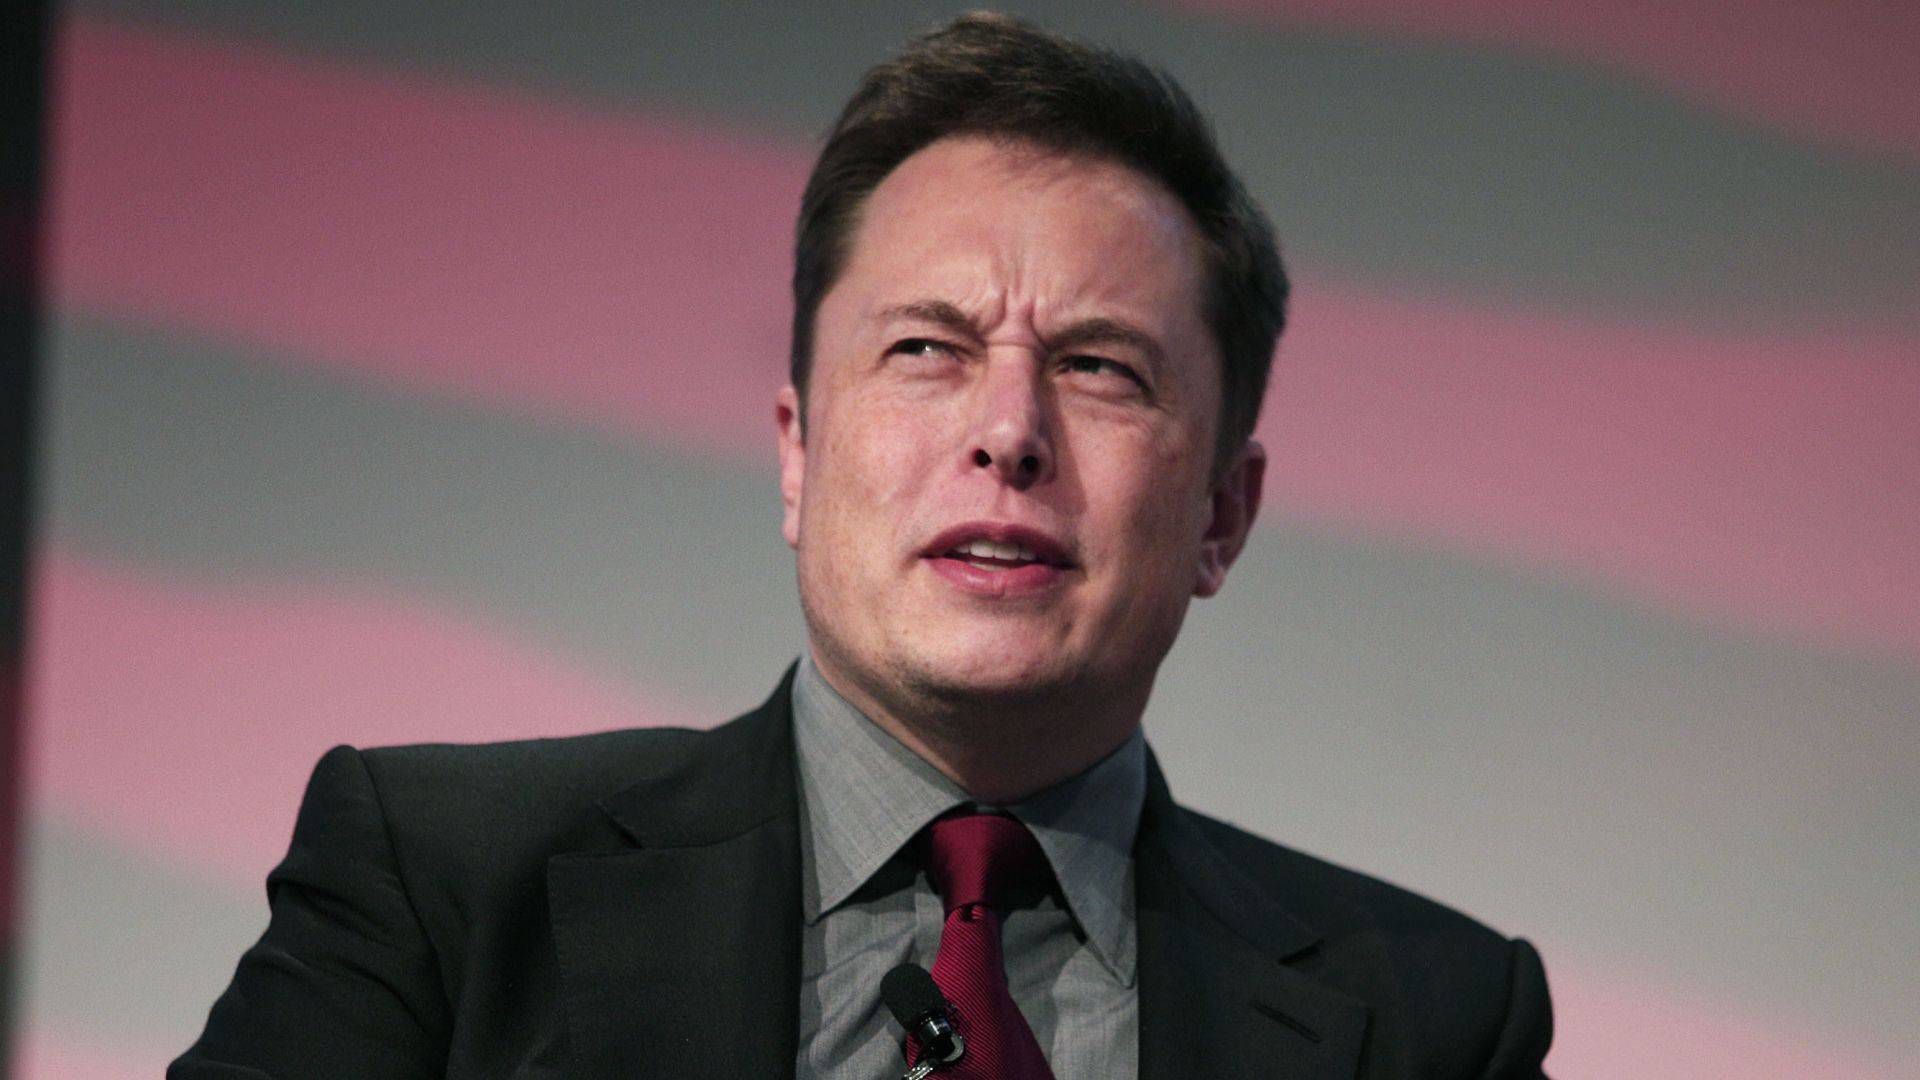 Elon Musk recibe abucheos en torneo de campeones de Valorant por cambios en Twitter